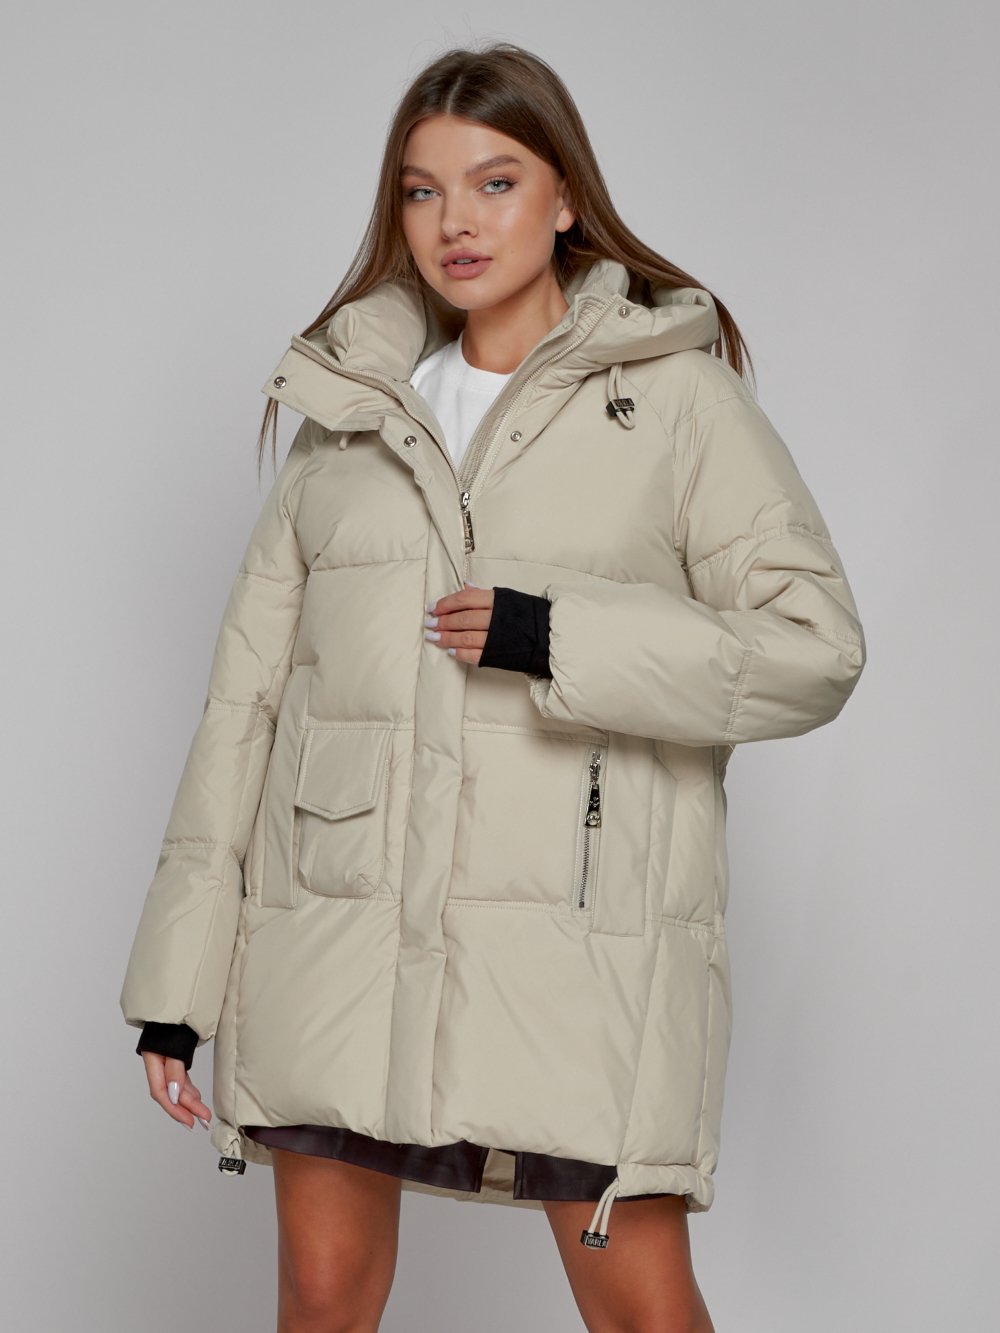 Купить куртку женскую оптом от производителя недорого в Москве 51122B 1